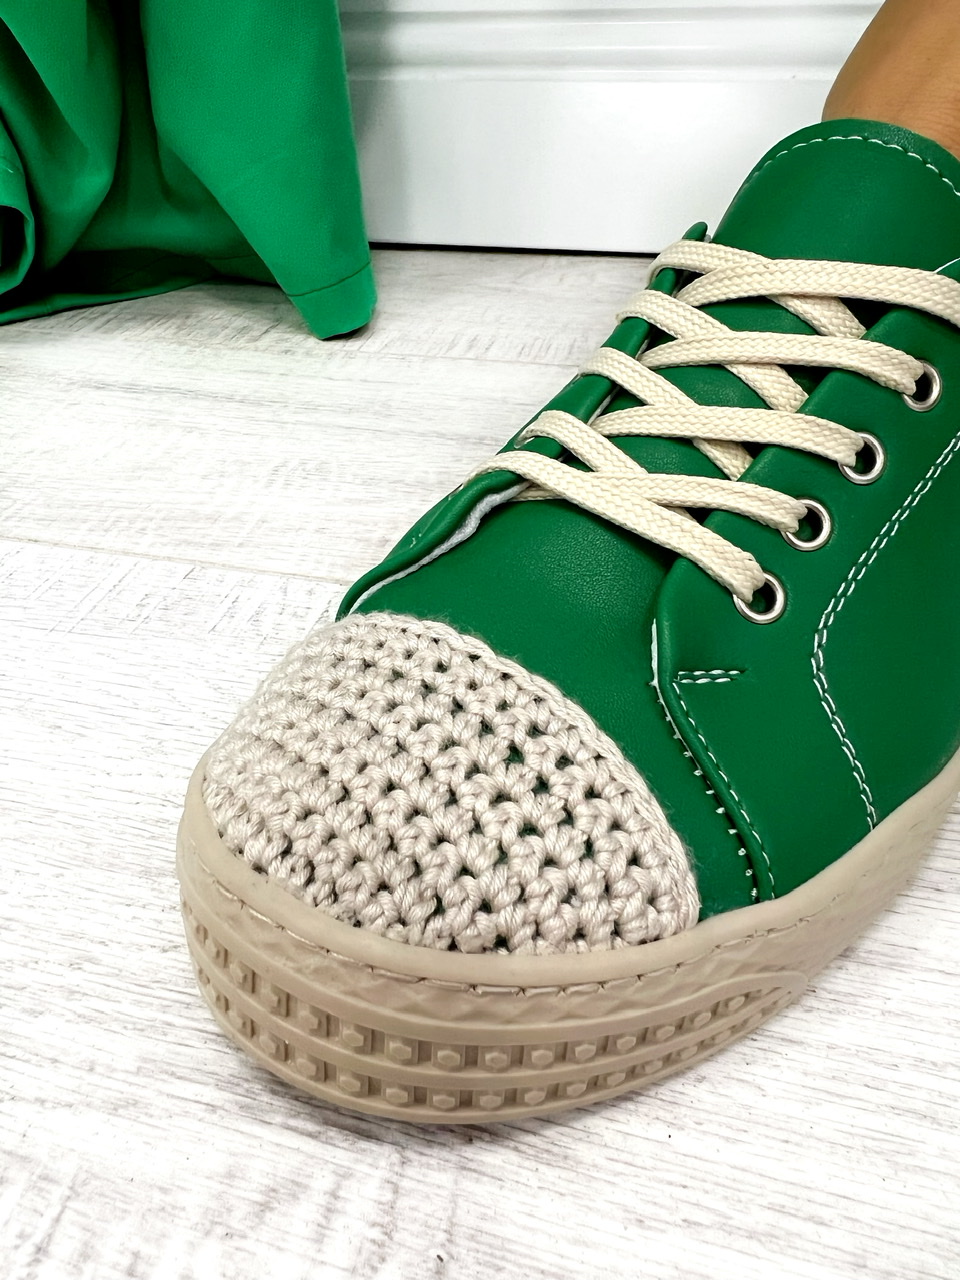 Women sneakers D638 - SHOELACE - GREEN